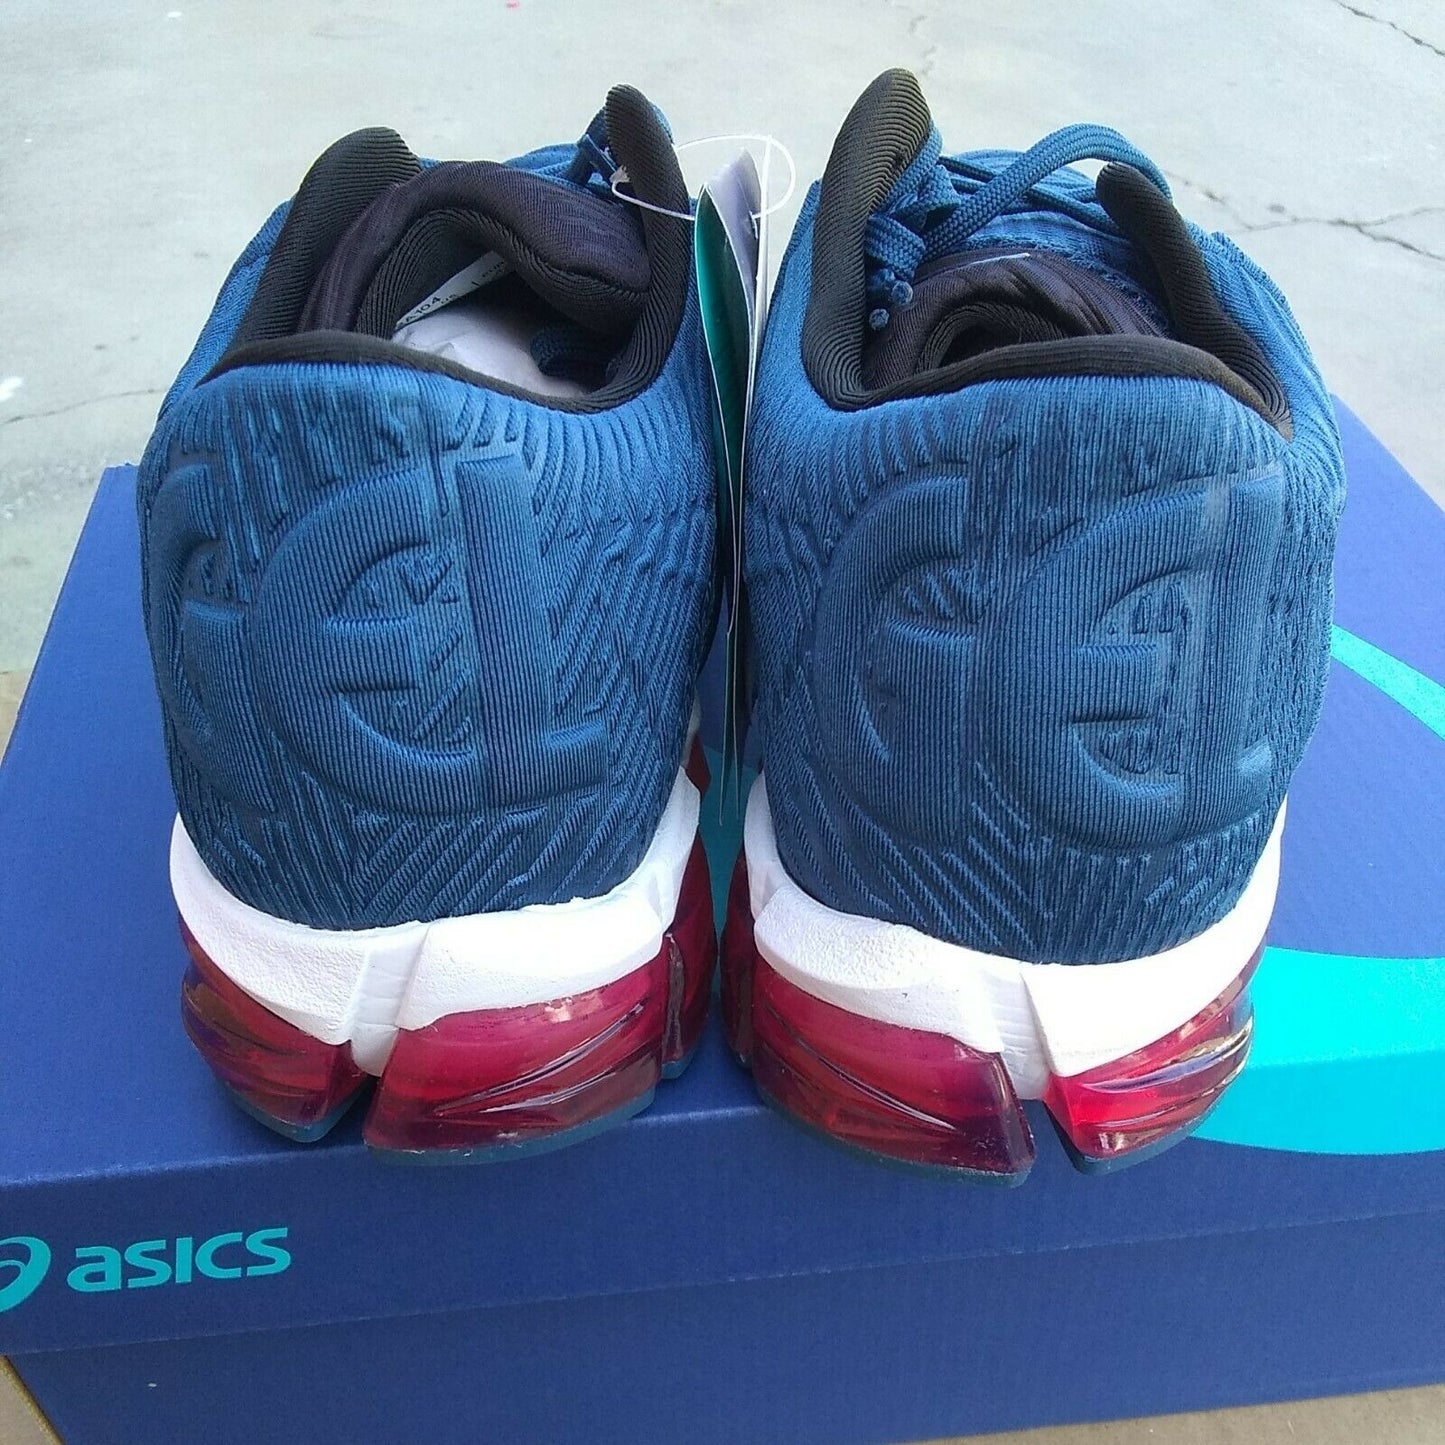 Asics woman"s gel quantum 360 5 mako blue running shoes size 10.5 US